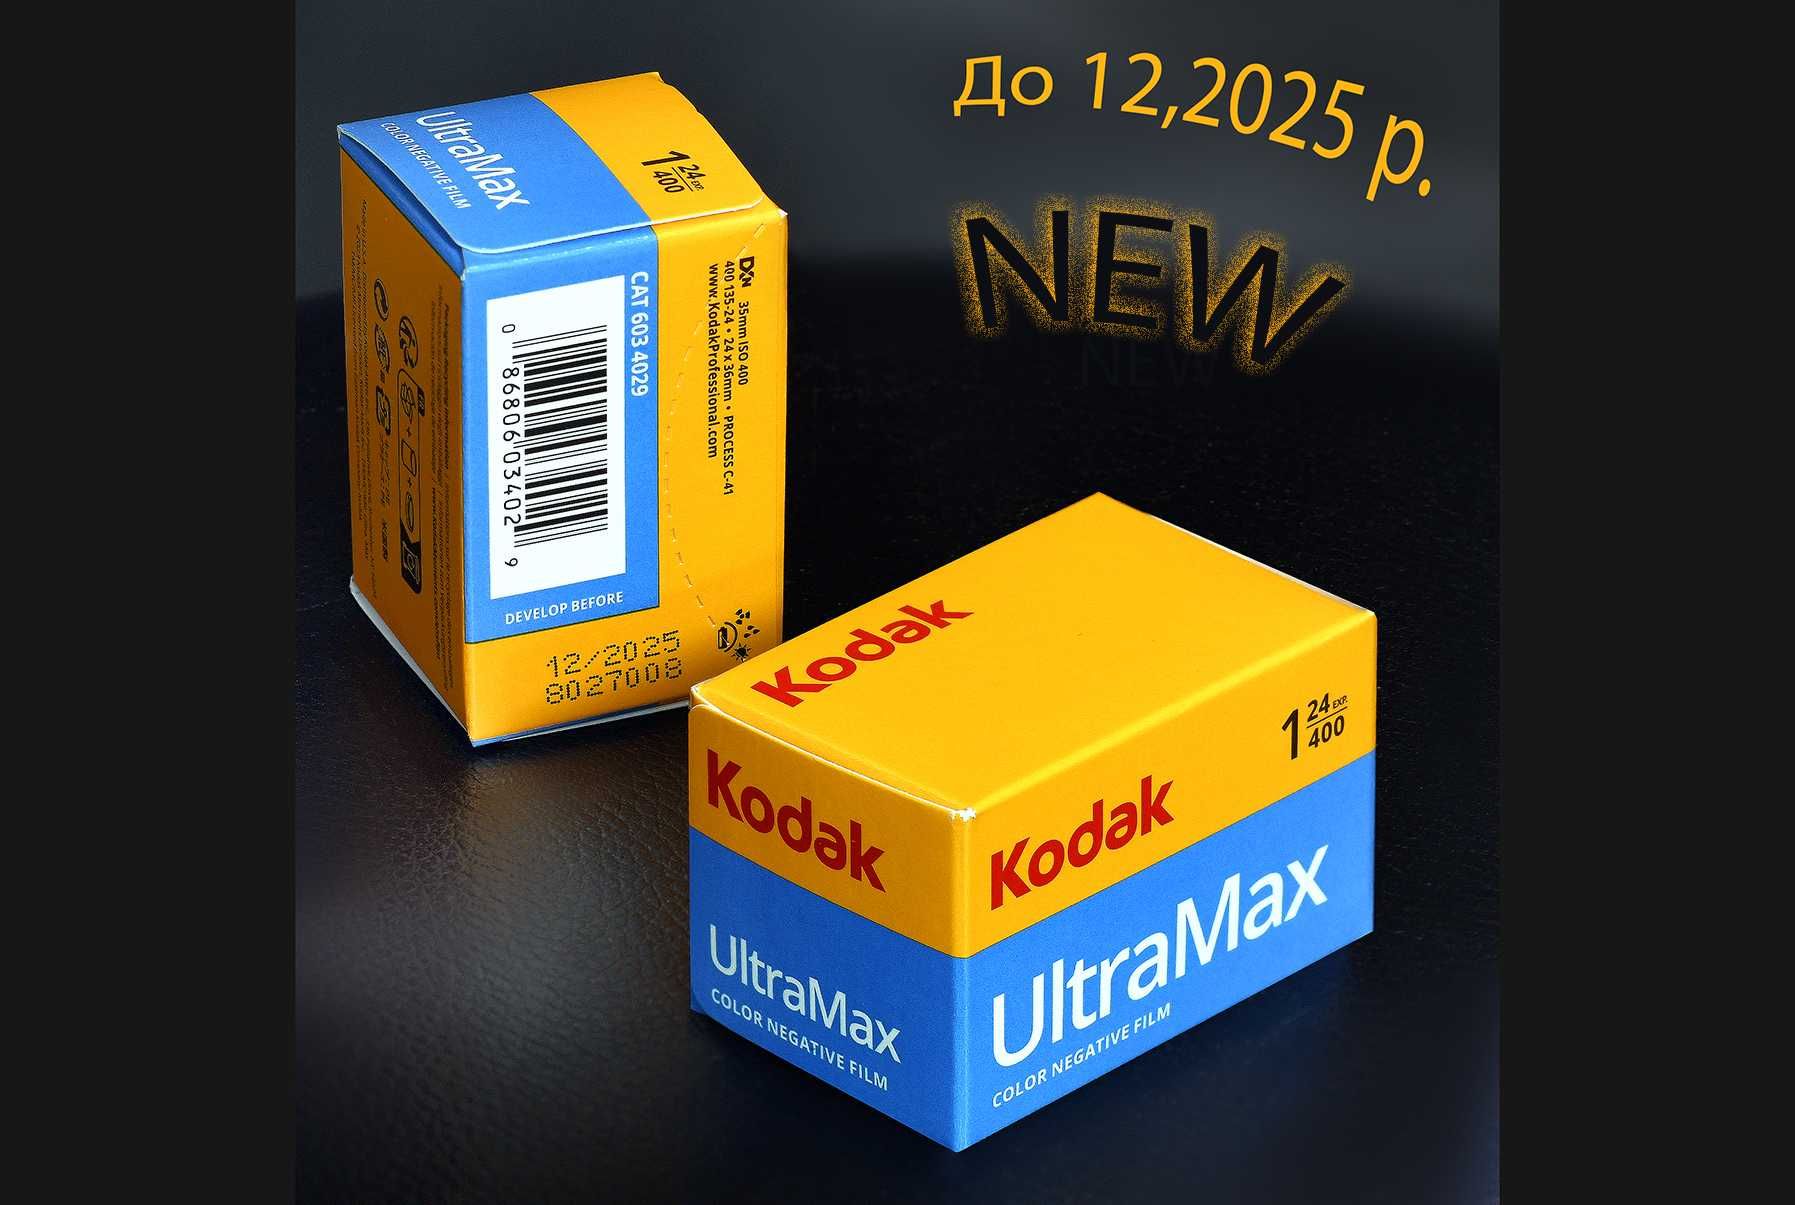 Фотоплівка KODAK ULTRA MAX 400/24 кадри x 1 шт (до 12,2025 р.)